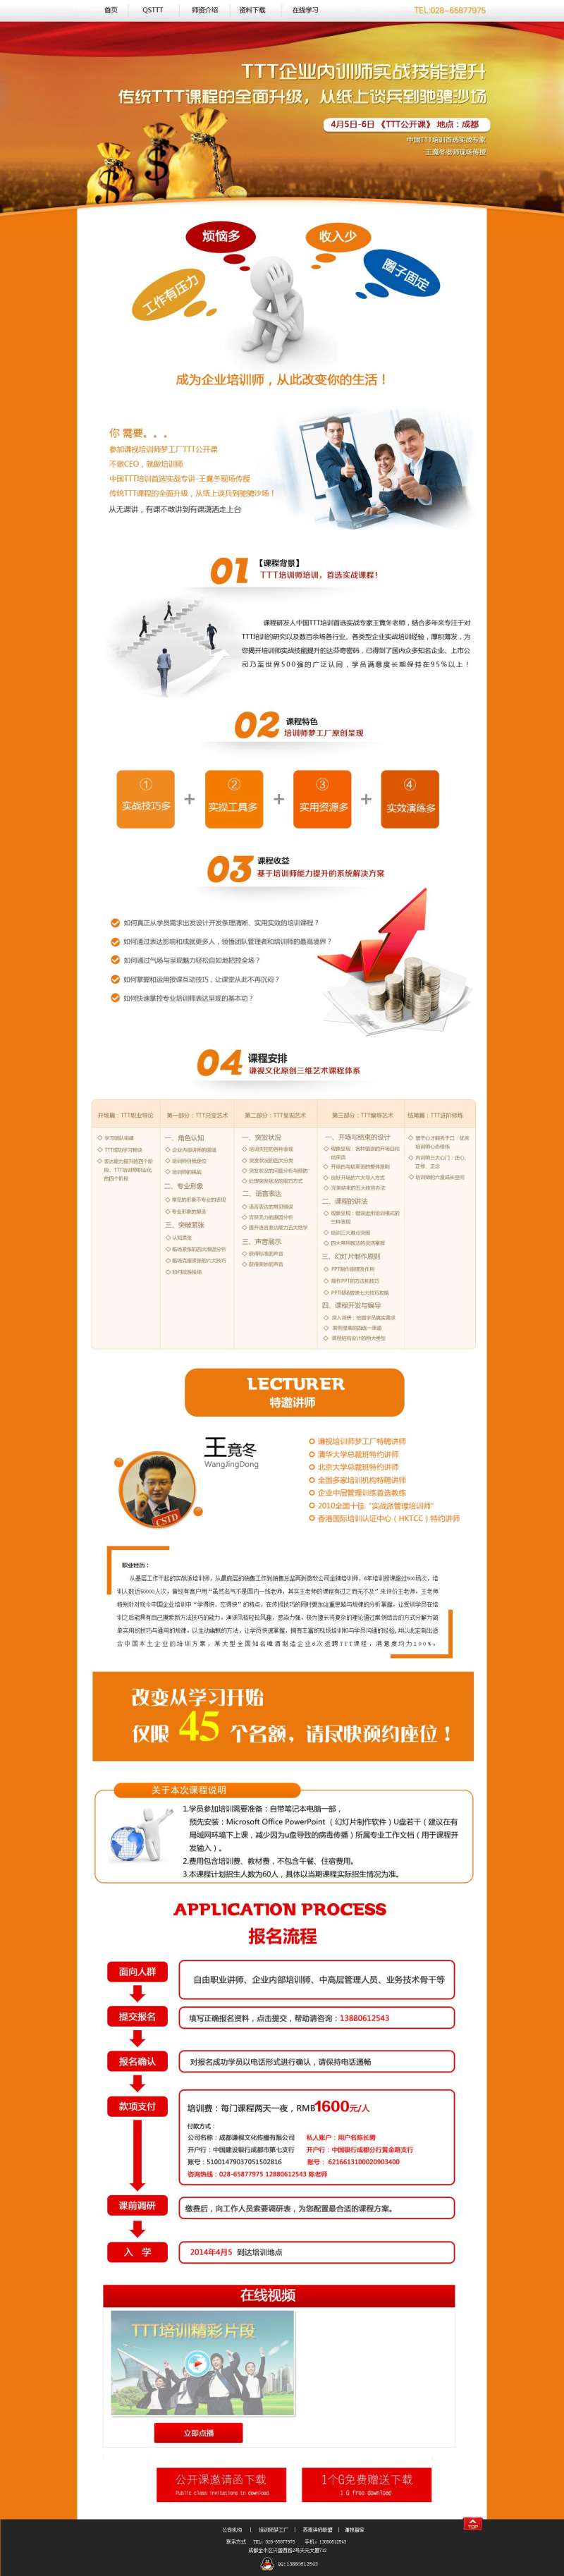 橙色的企业技能培训广告专题页面模板psd分层素材下载